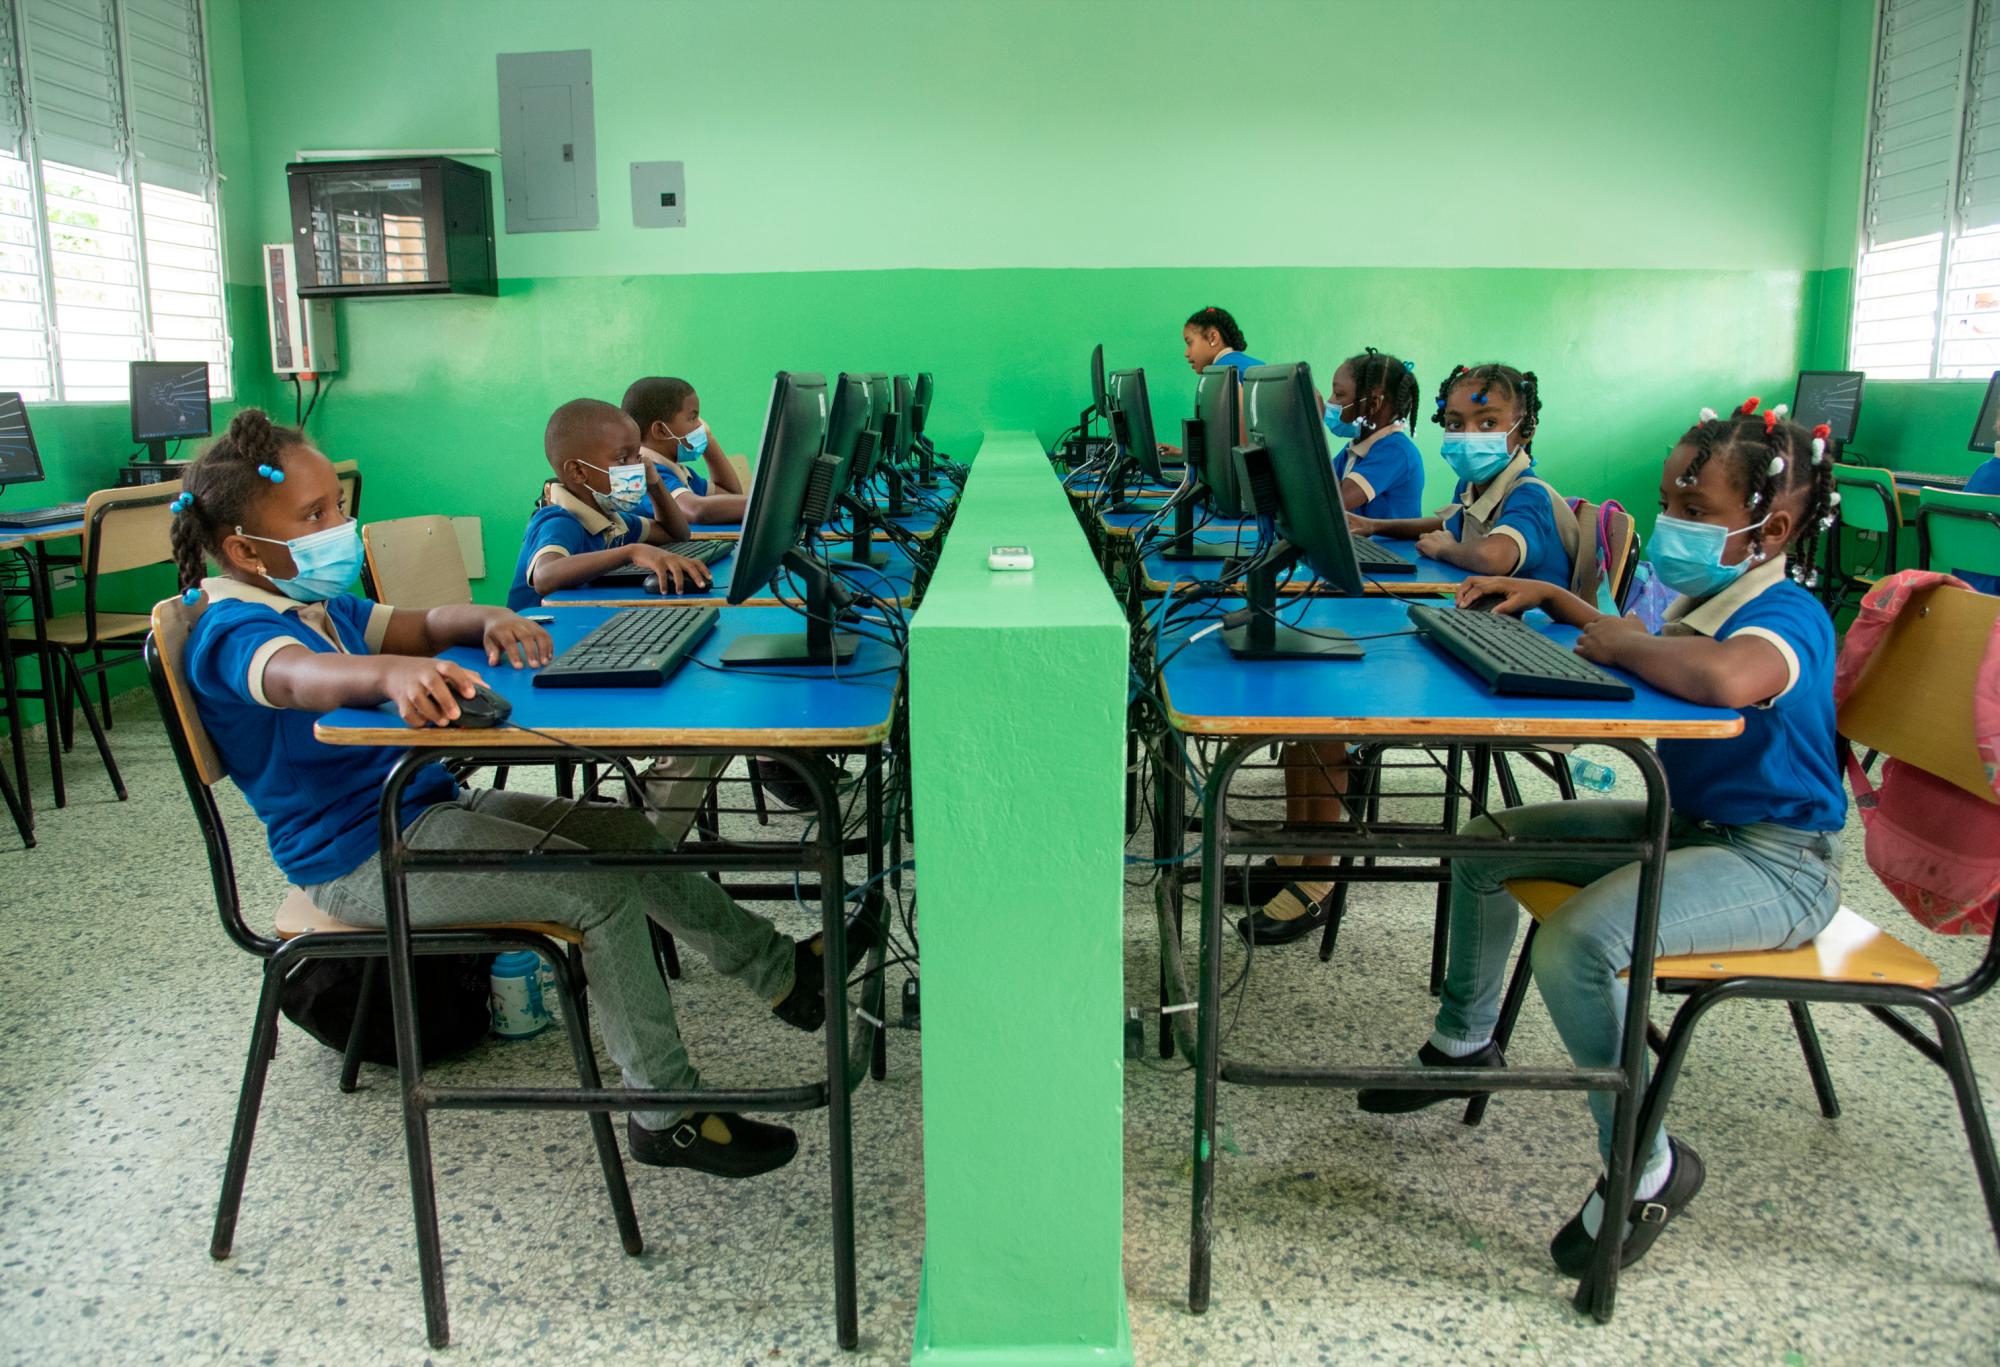 Algunos alumnos encontraron sus viejas aulas modernizadas con nuevos equipos informáticos. (EDDY VITTINI)